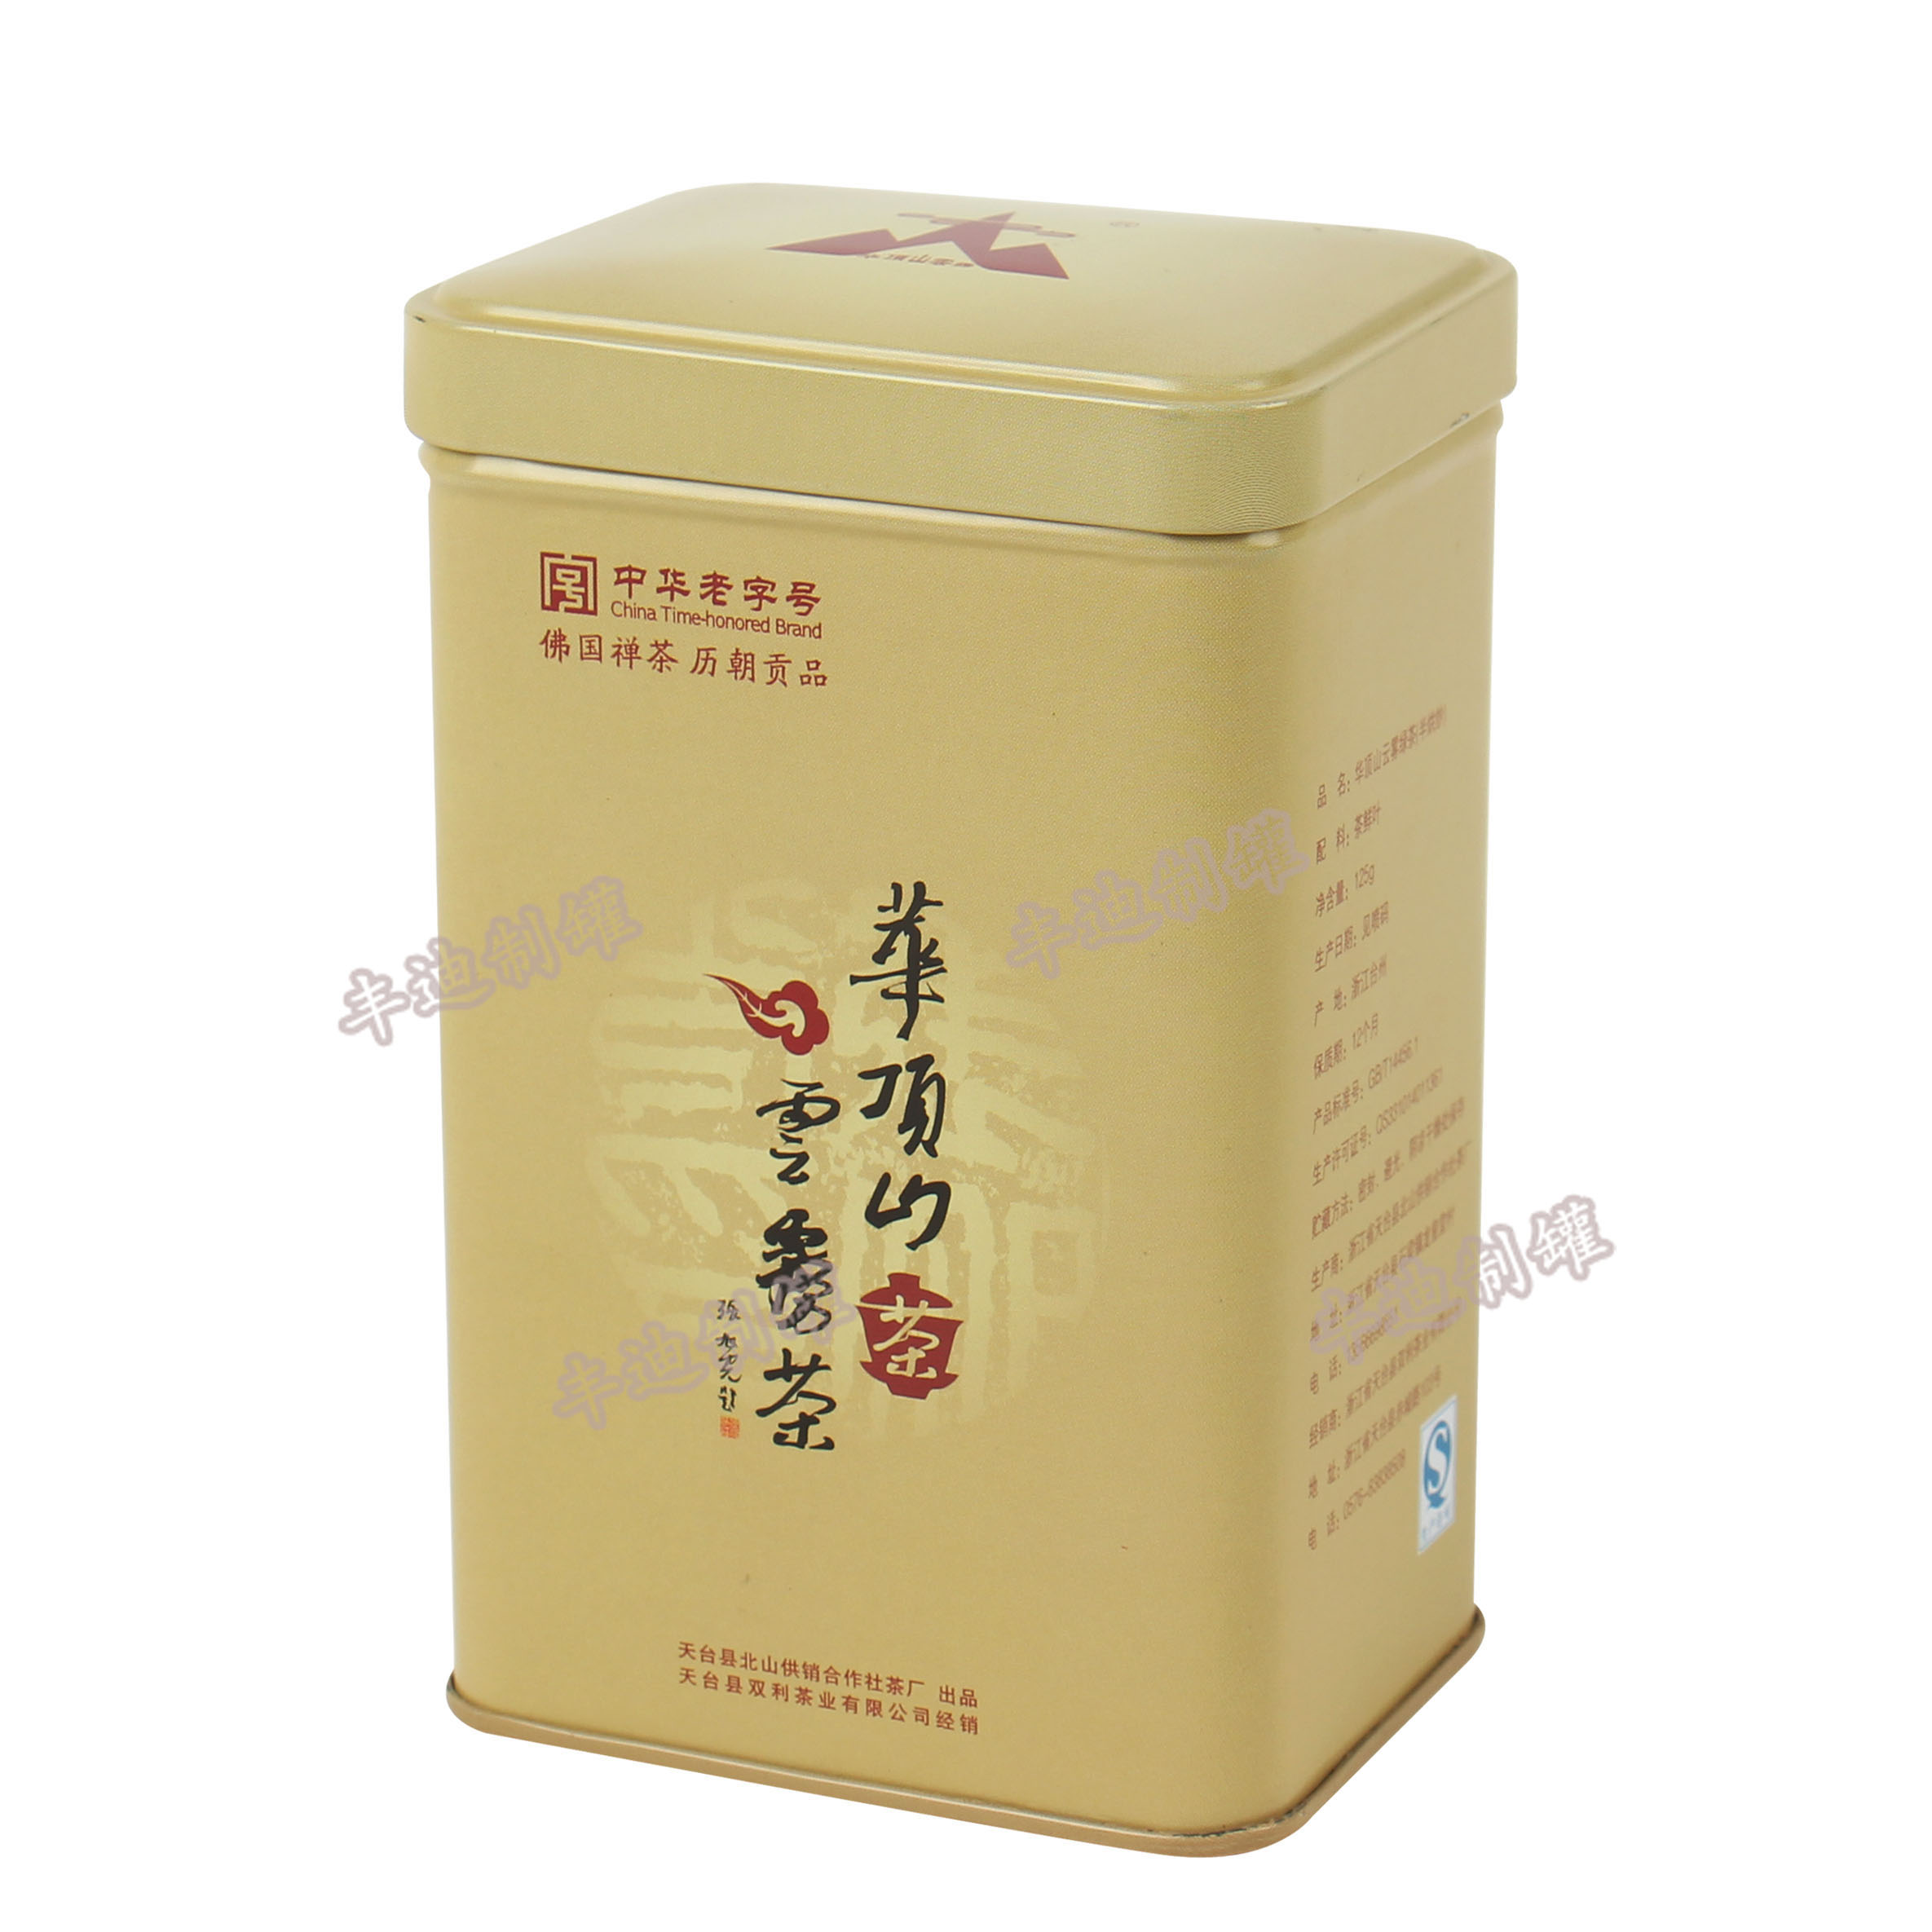 米黄色茶叶盒 华顶山云雾茶叶盒 禅茶贡品盒